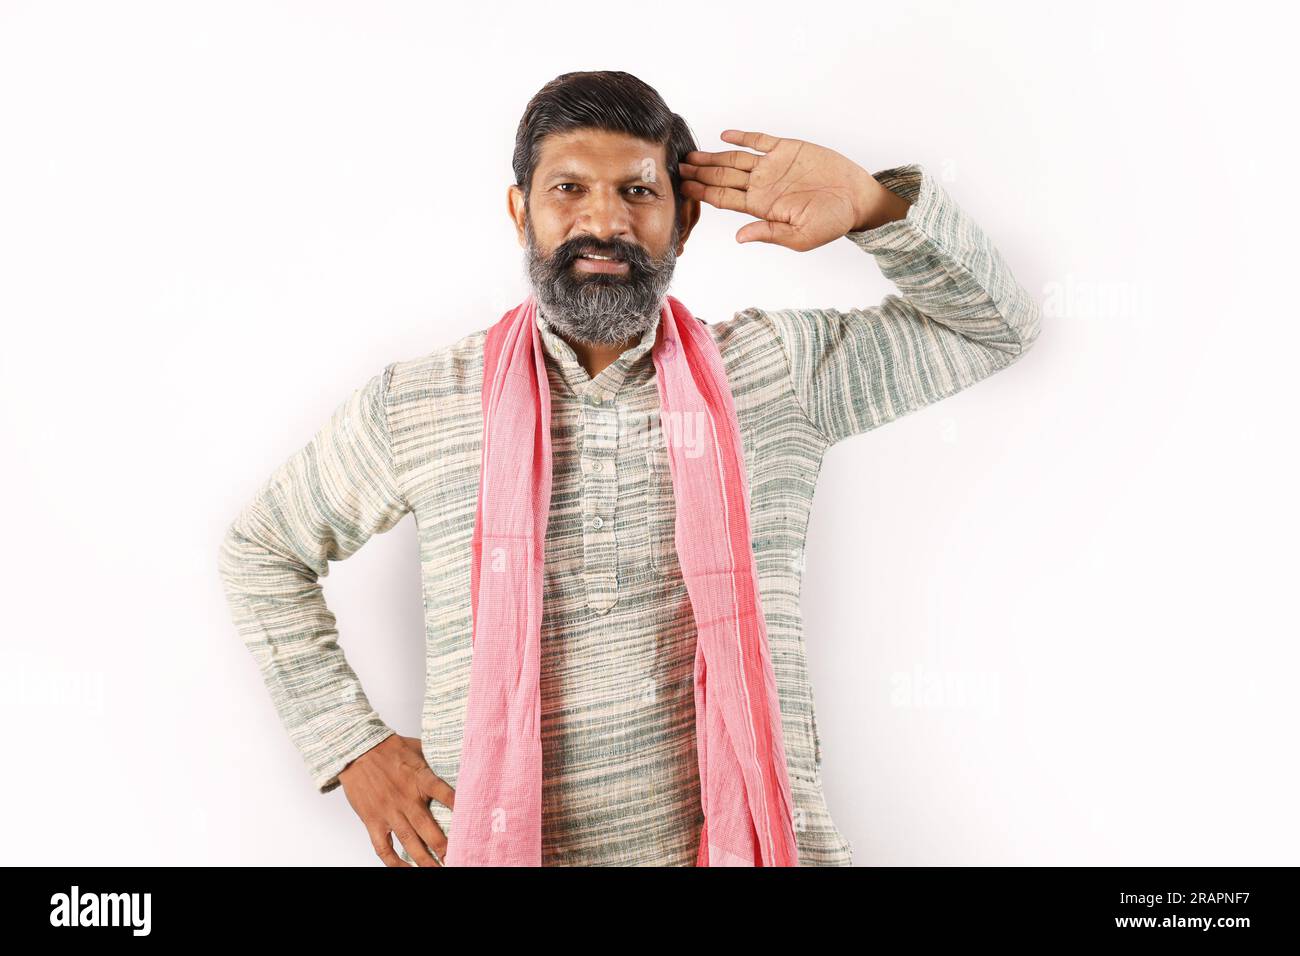 Ritratto di un uomo barbuto indiano nel concetto rurale dell'India. Espressioni funky sfondo bianco. povero abitante del villaggio. varie espressioni e stati d'animo di povertà Foto Stock